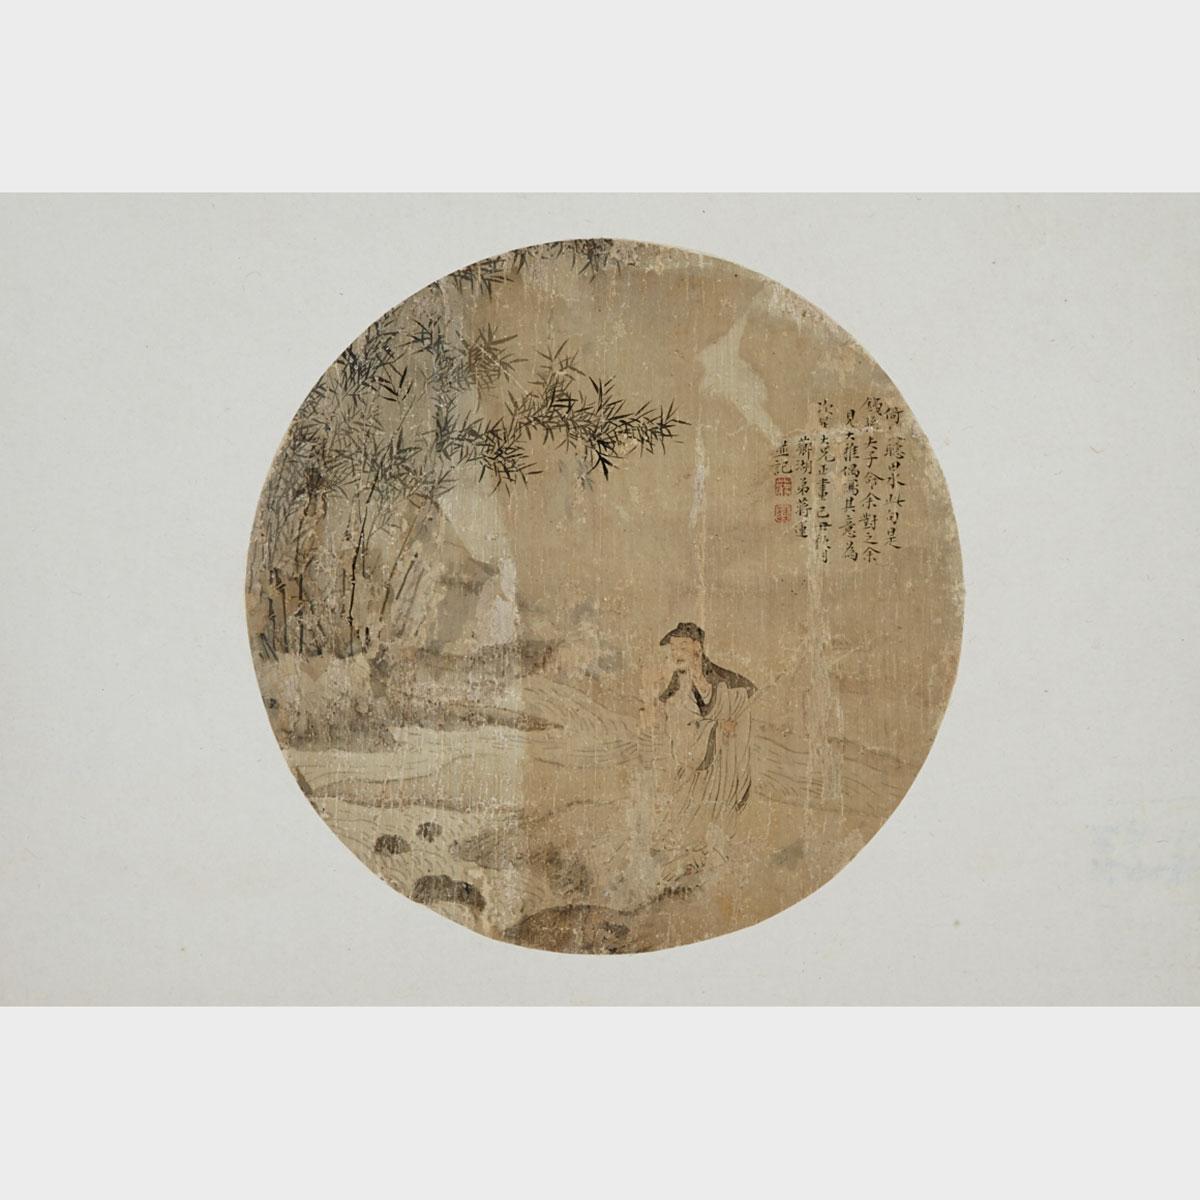 Fan Scholar Painting, Jiang Lian (1796-1836?) TOGETHER with Fan Bird Scene Painting, Pan Zhengyong (1852-1921)